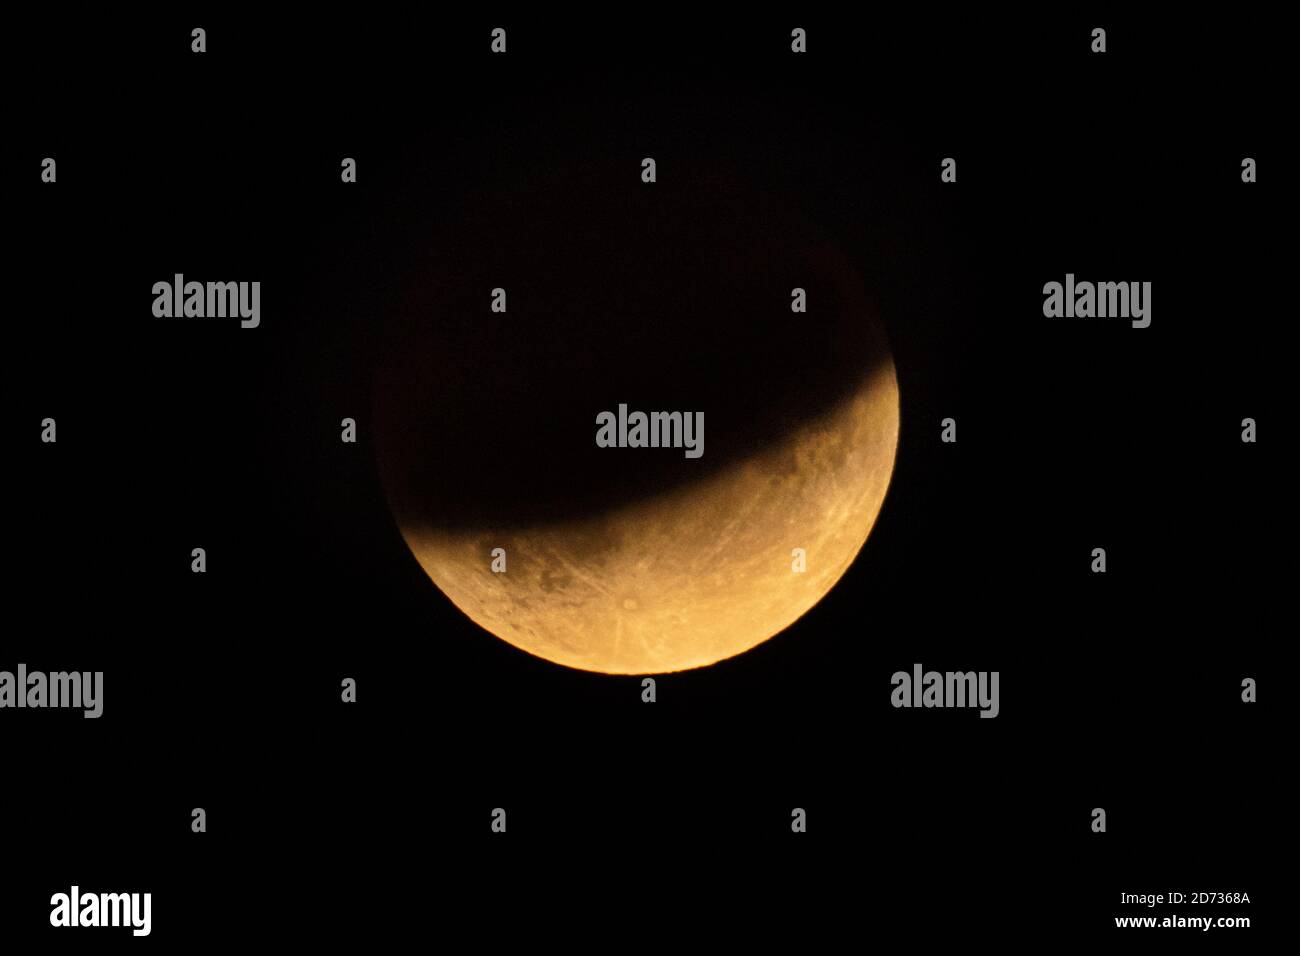 La luna vista durante un'eclissi lunare parziale, conosciuta come luna mezzo sangue, su Londra. Data immagine: Martedì 16 luglio 2019. Il credito fotografico dovrebbe essere: Matt Crossick/Empics Foto Stock